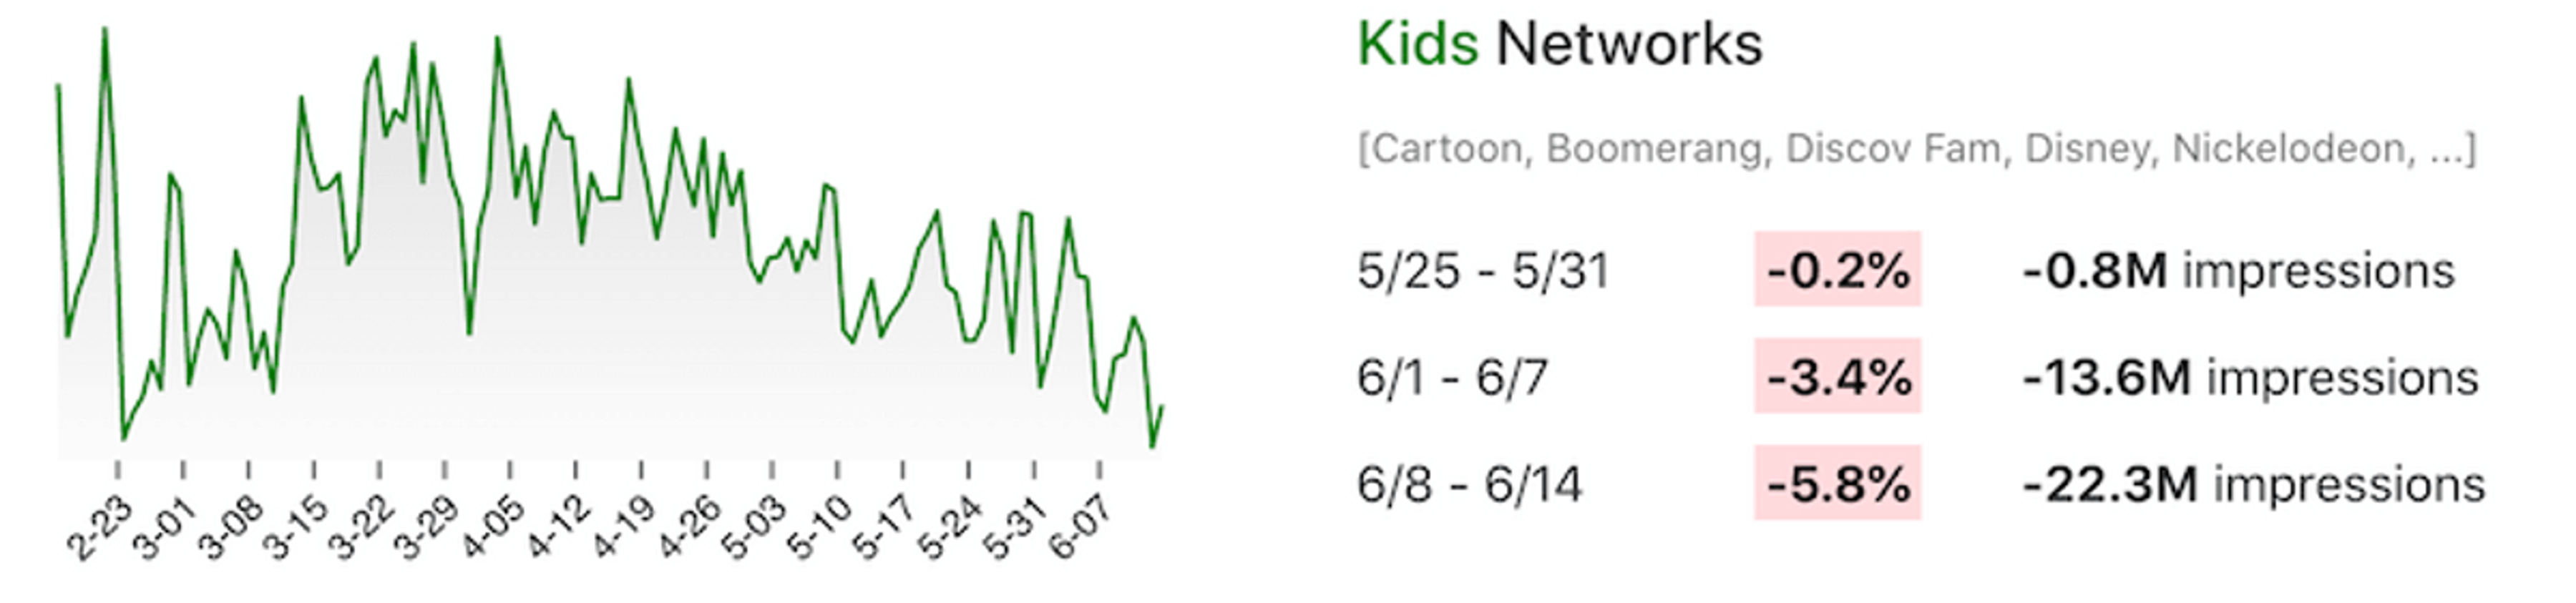 Line chart showing week-over-week viewership changes for kids TV networks like Cartoon Network, Disney, Nickelodeon, etc.